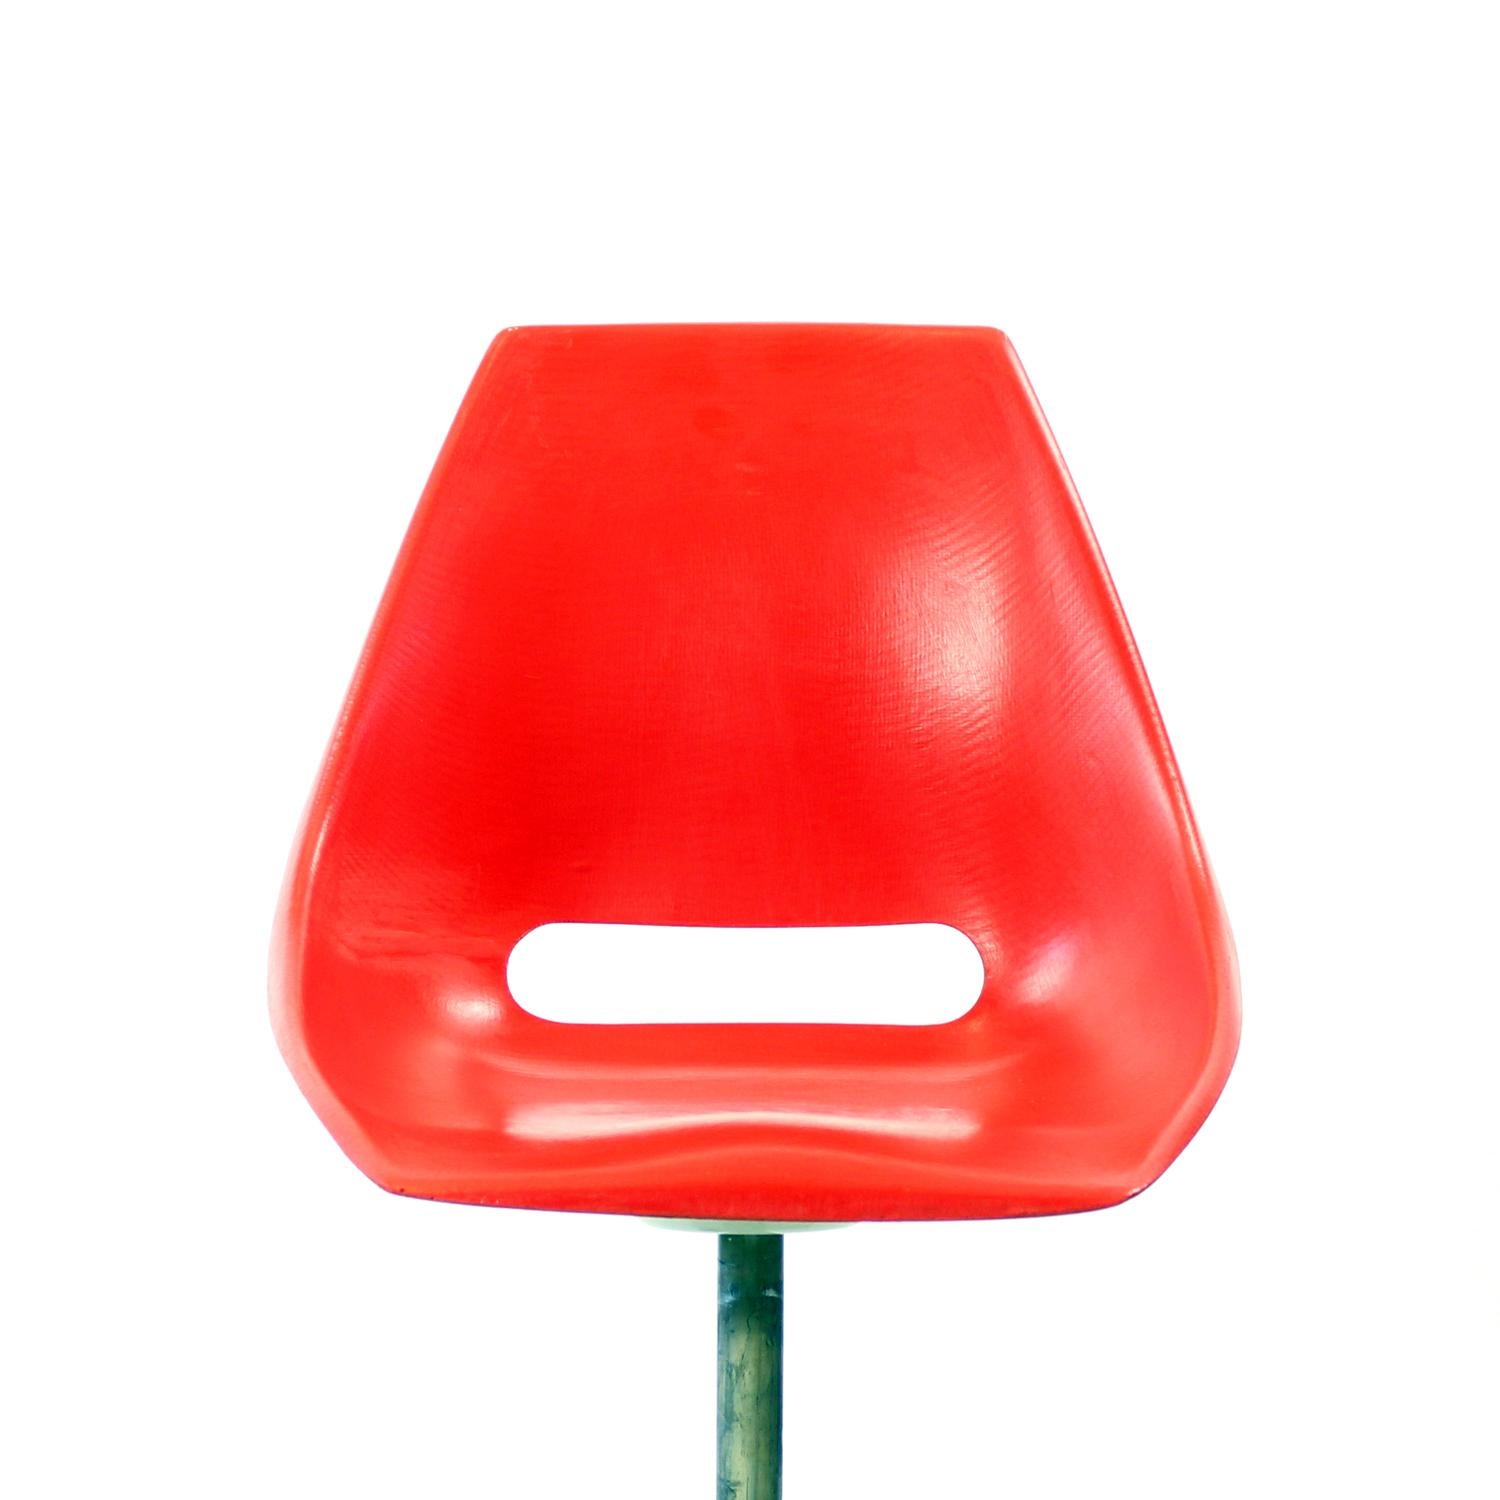 Mid-Century Modern Red Tram Chair By Miroslav Navratil For Vertex, 1960s For Sale